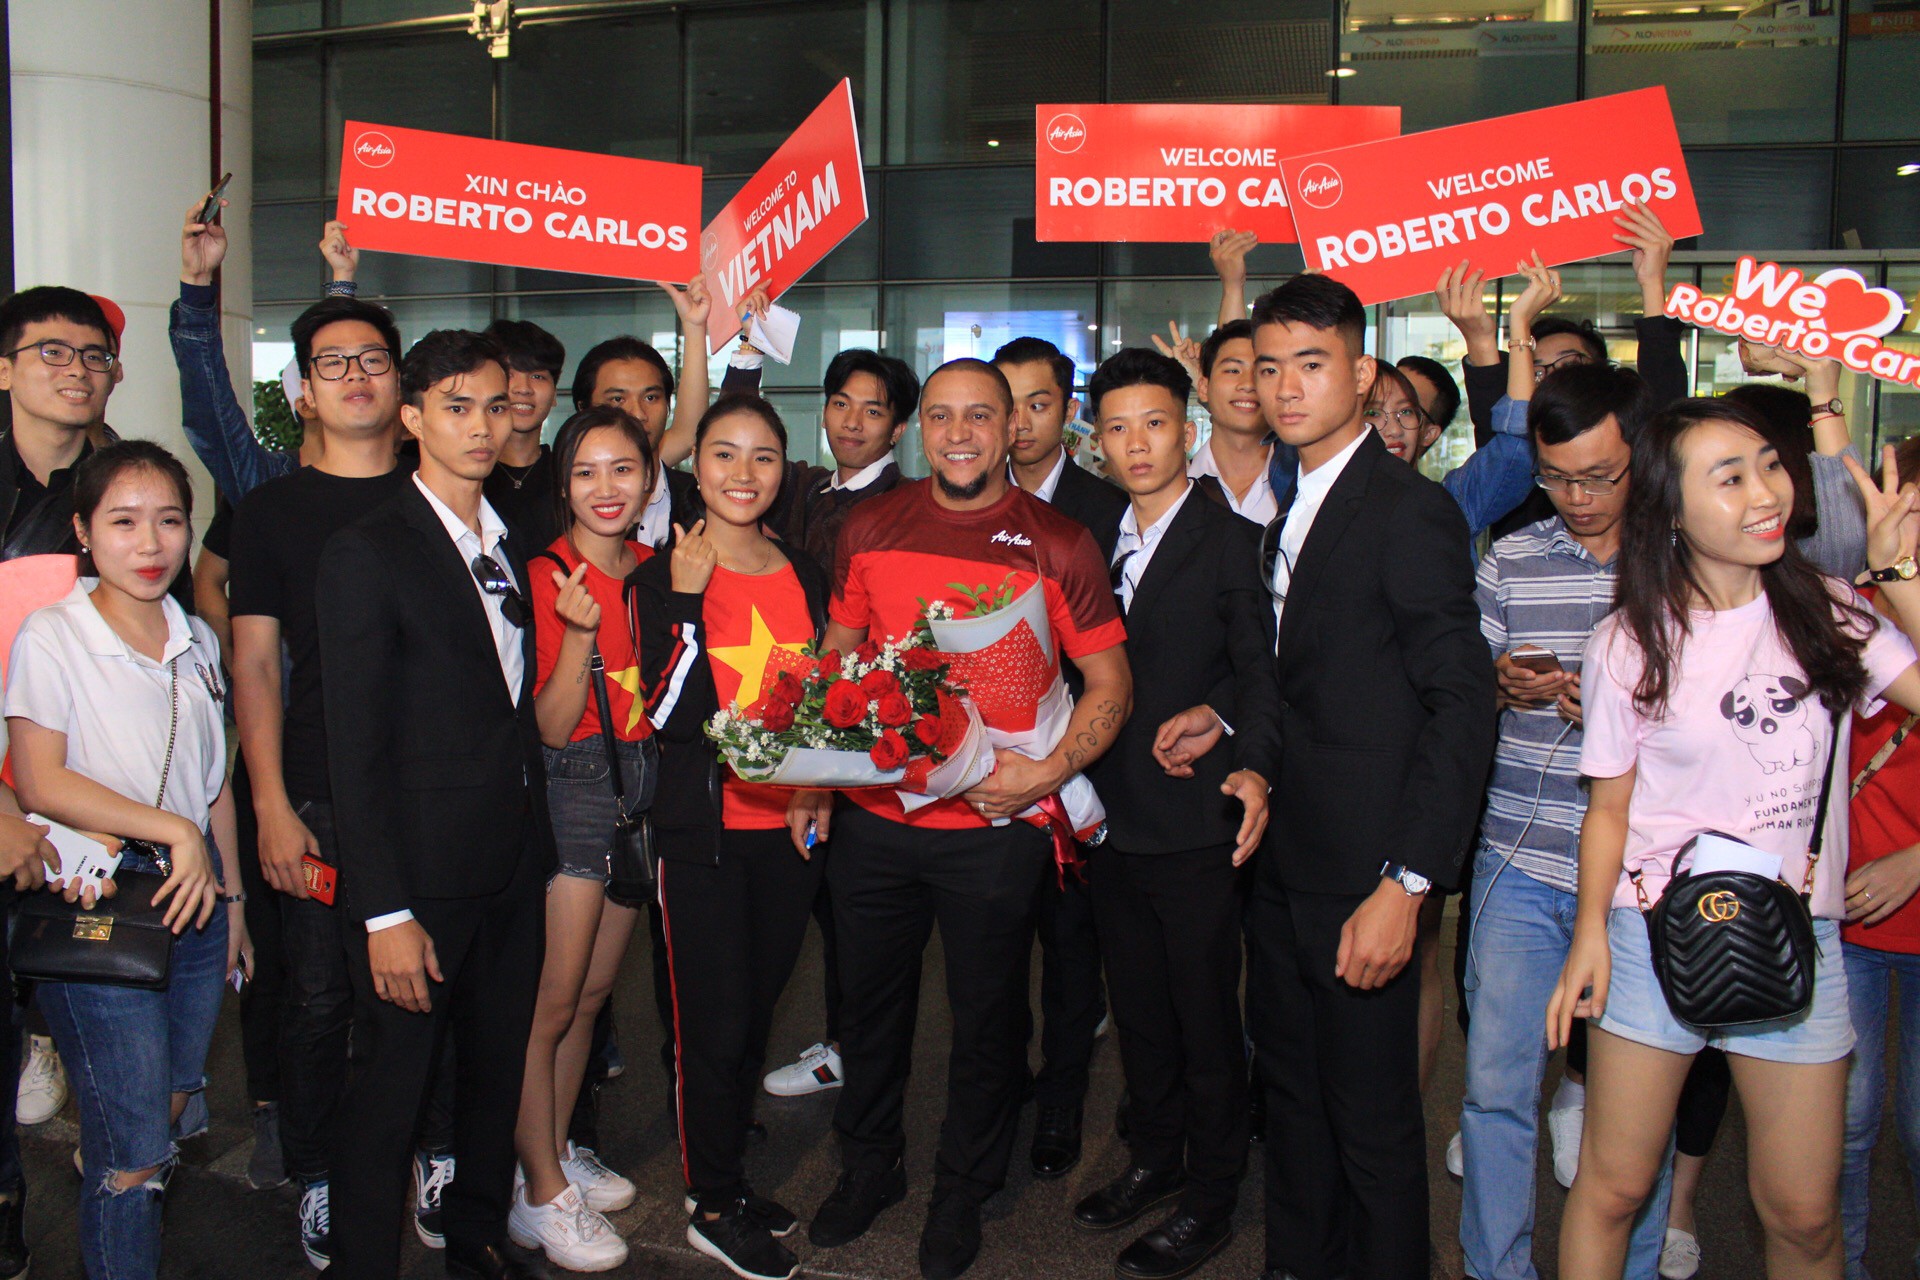 Huyền thoại vĩ đại Roberto Carlos chính thức có mặt ở Hà Nội, chuẩn bị đối đầu Công Vinh trước trận Việt Nam - Malaysia - Ảnh 3.